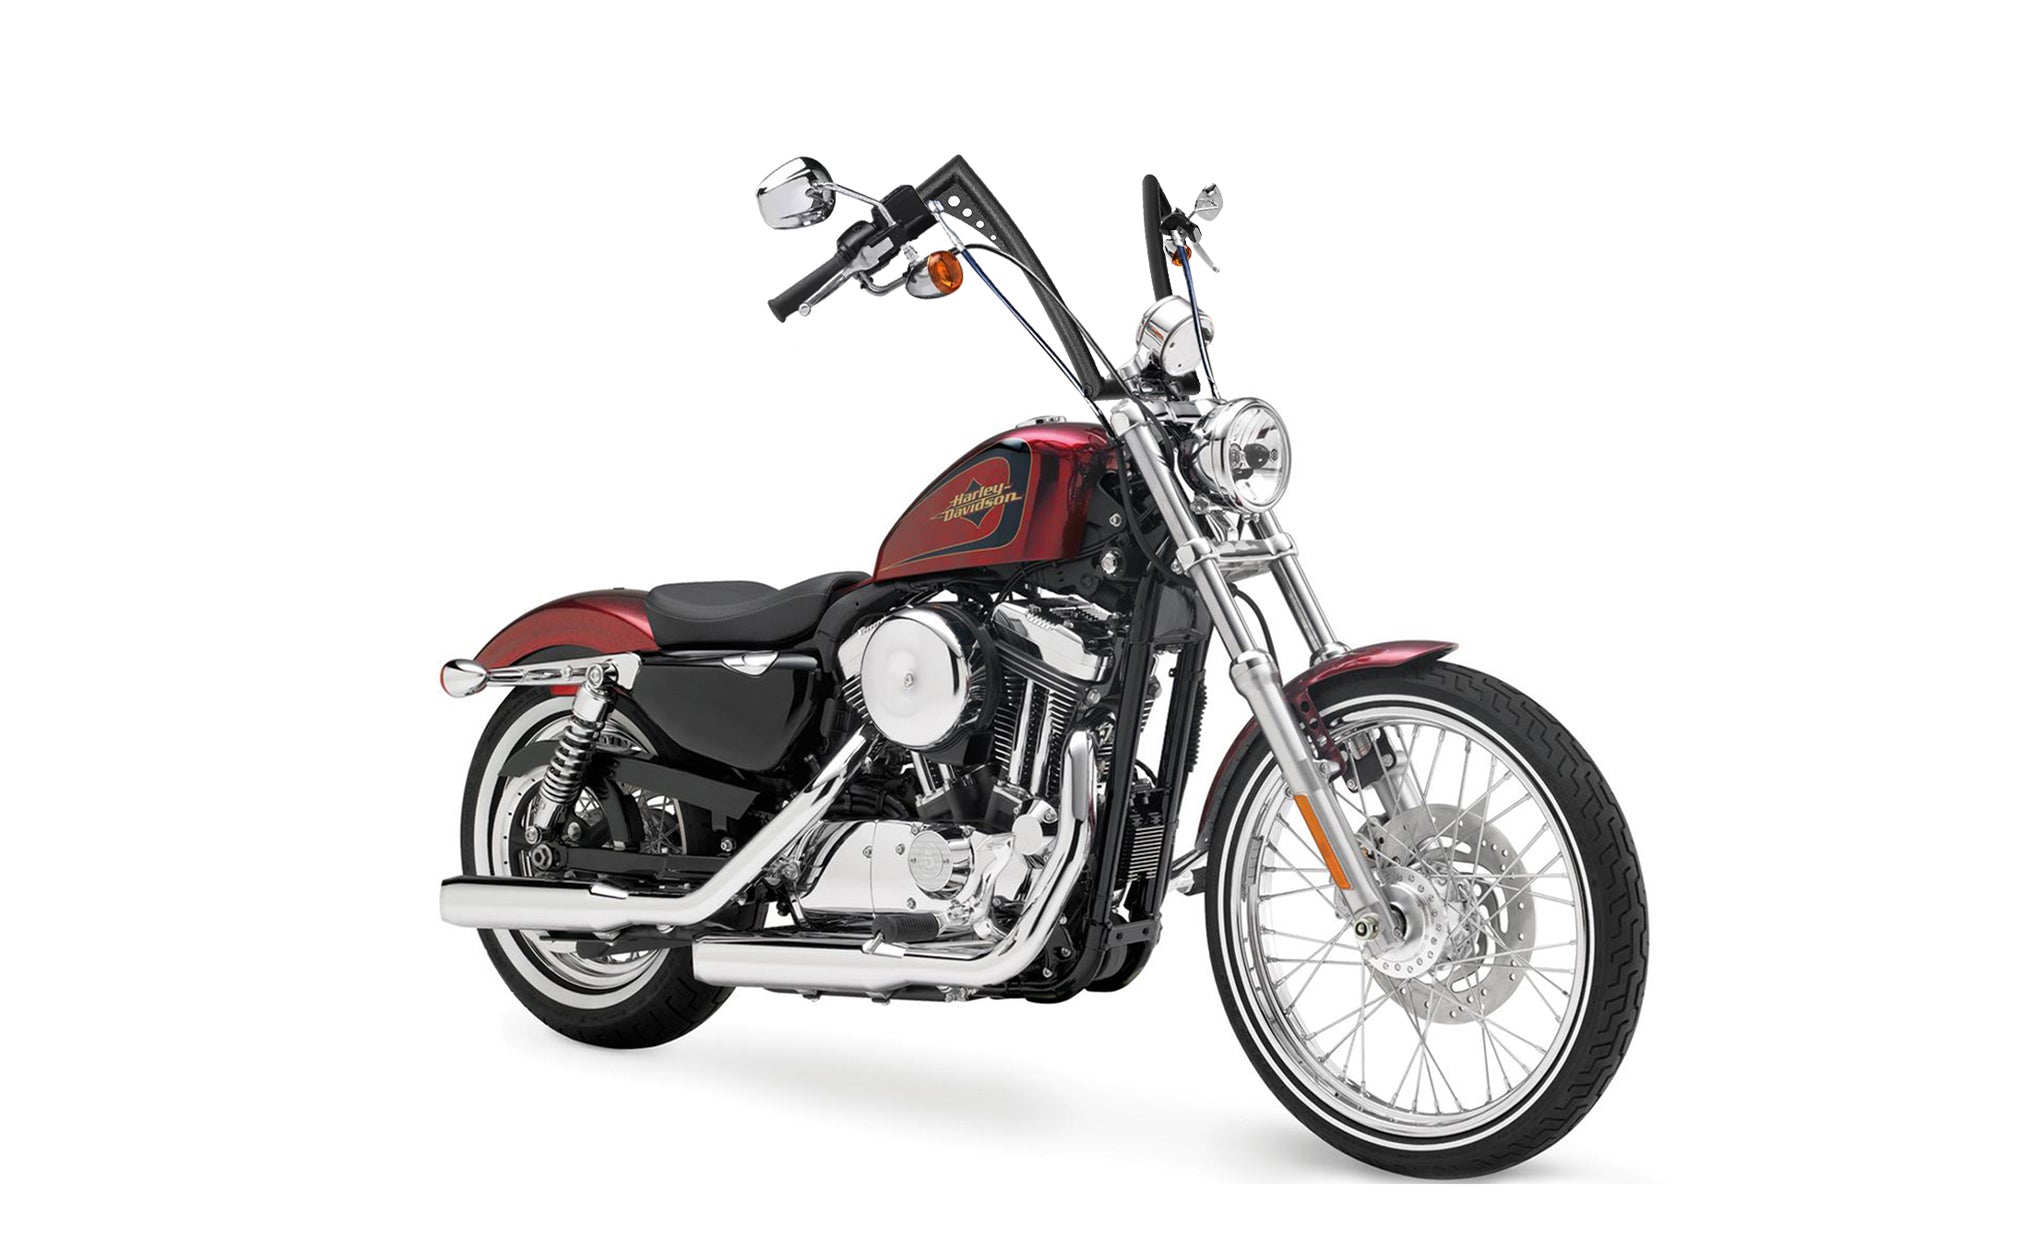 Viking Iron Born 12" Handlebar for Harley Sportster Seventy Two Matte Black Bag on Bike View @expand